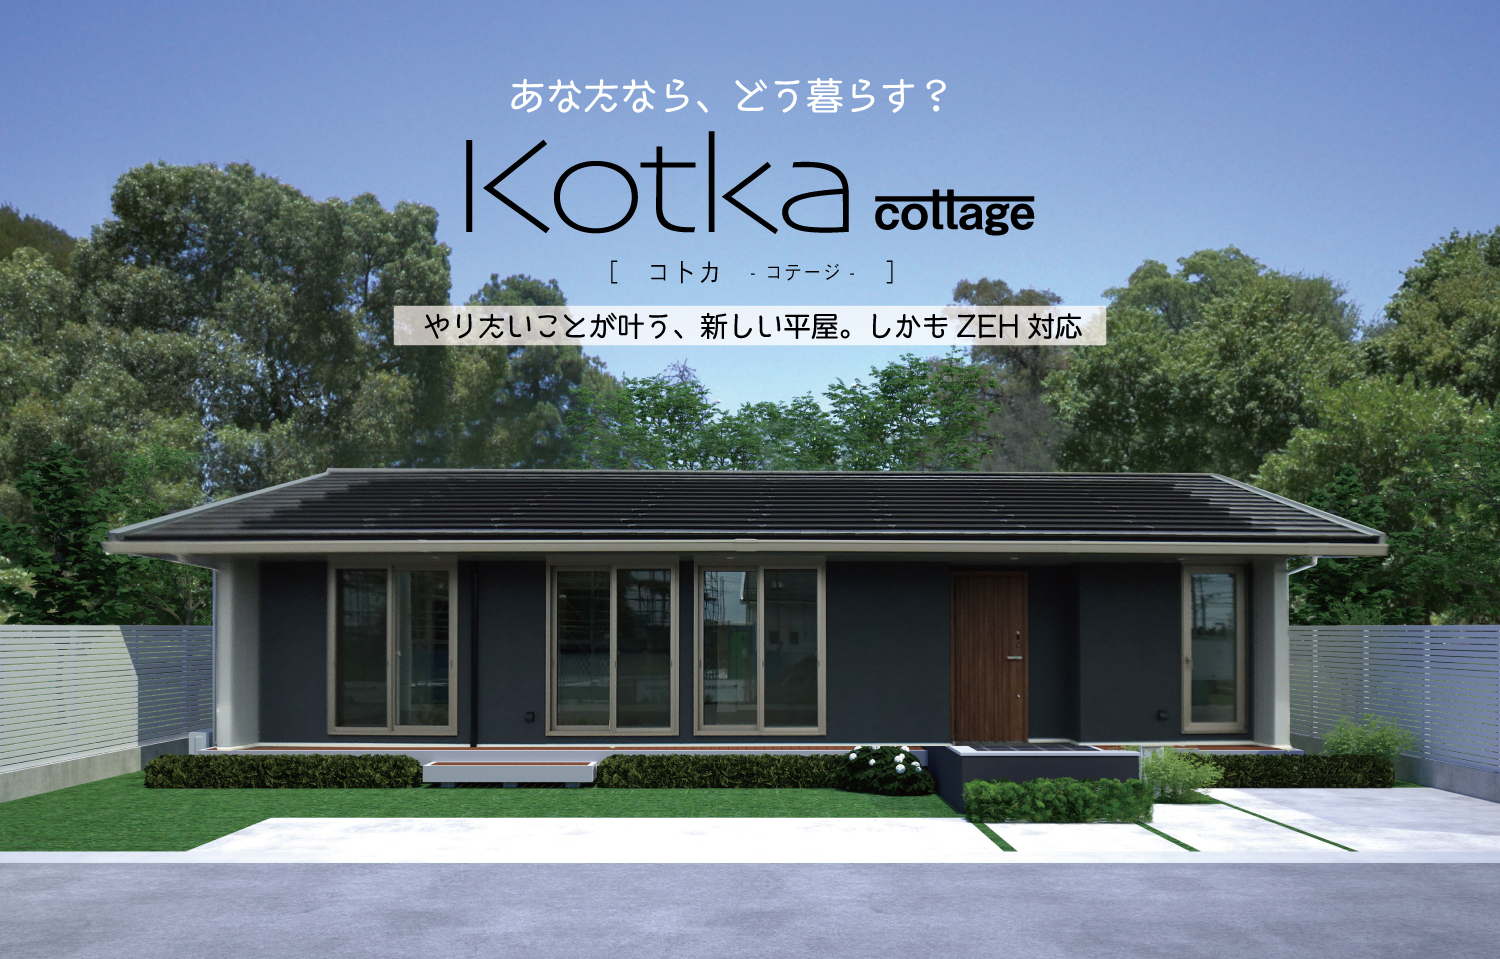 平屋の新商品 Kotka Cottage コトカコテージ 販売開始 注文住宅ならusuko ウスコ